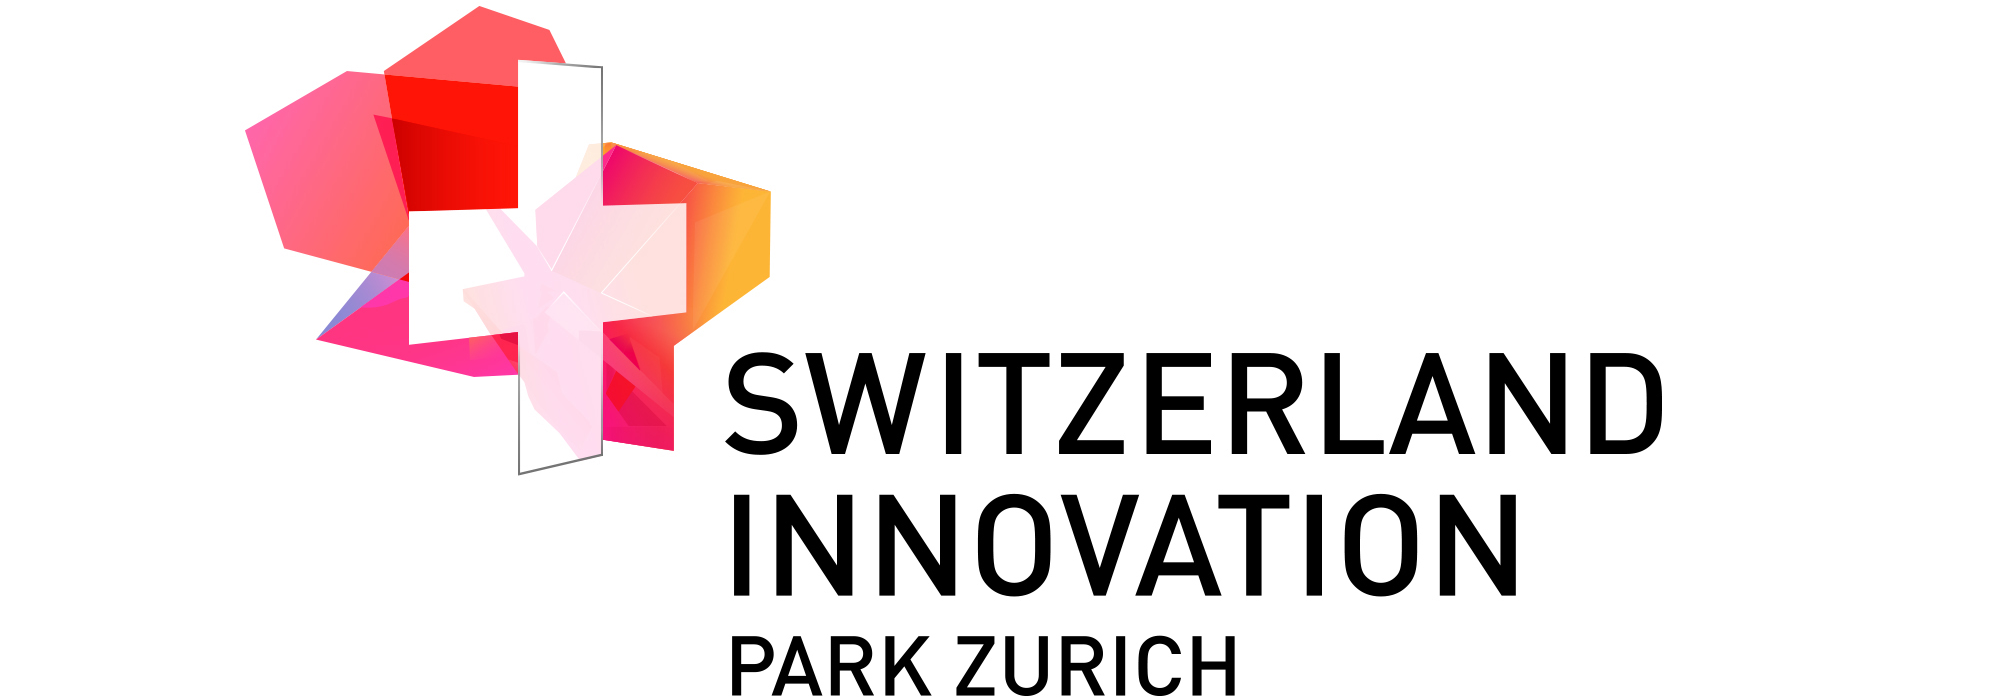 Switzerland Innovation Logo